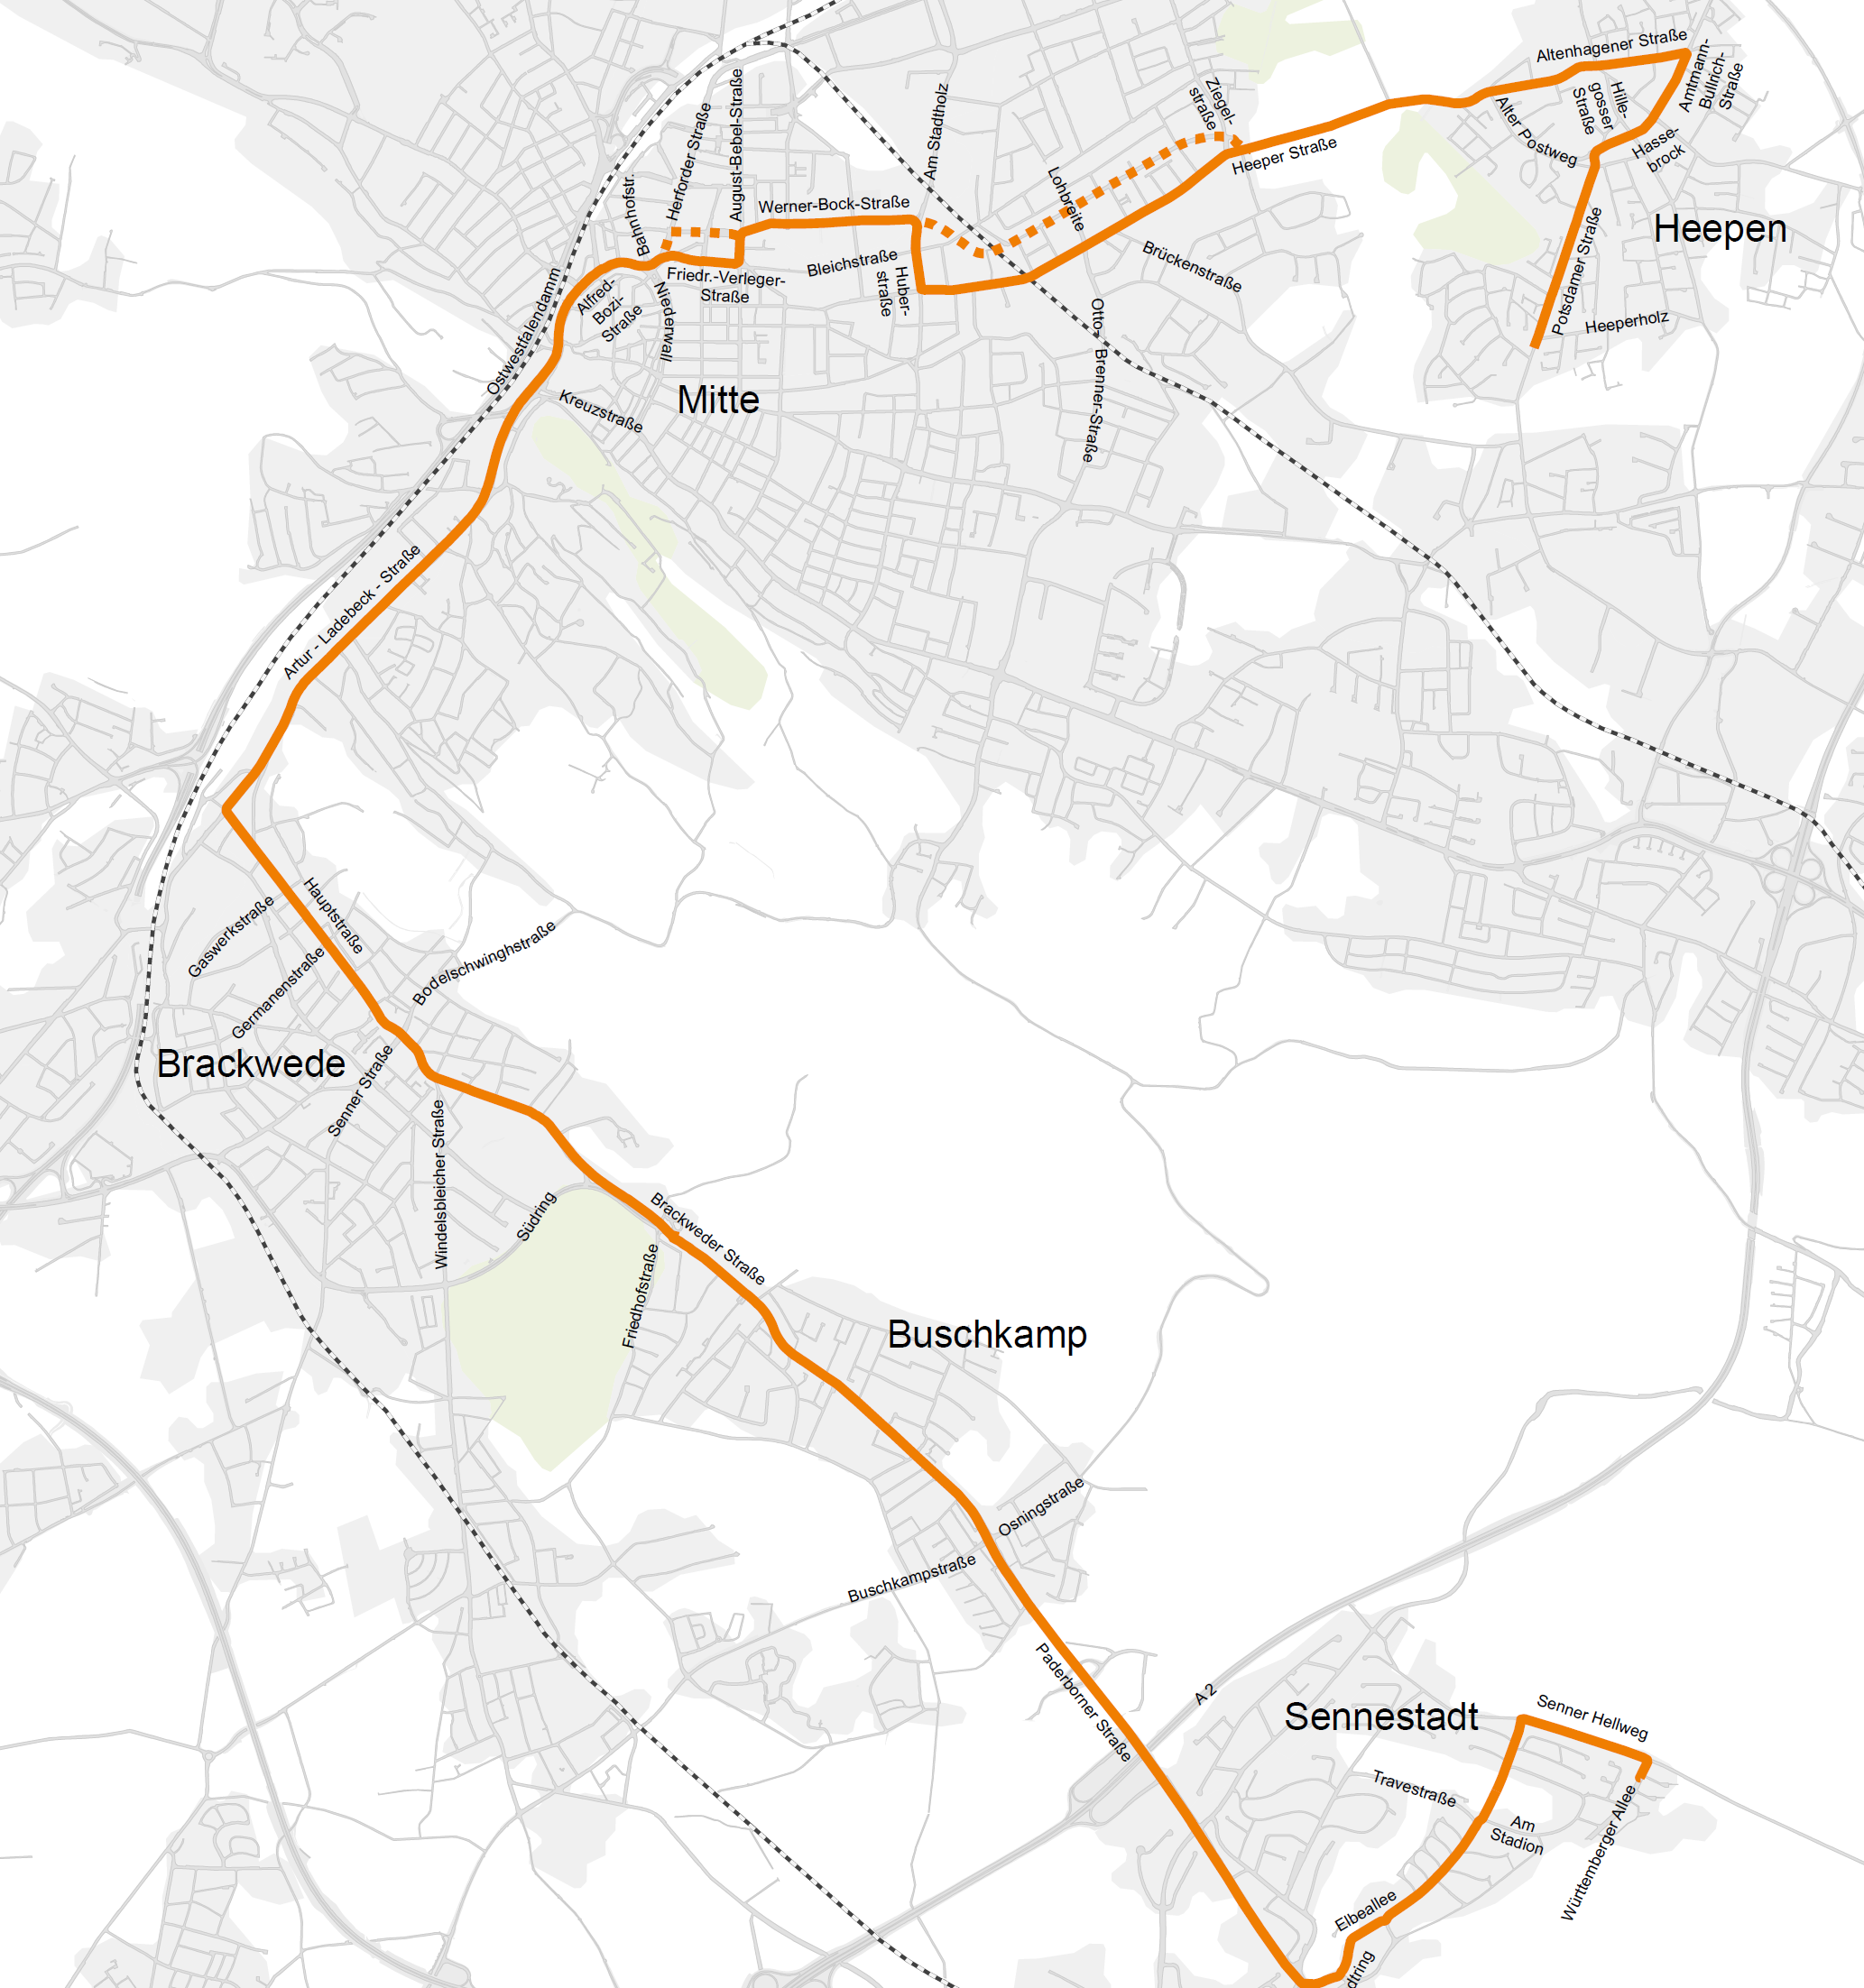 Grundlage für die weitere Planung der Stadtbahnlinie 5 von Sennestadt nach Heepen soll die in Abb.